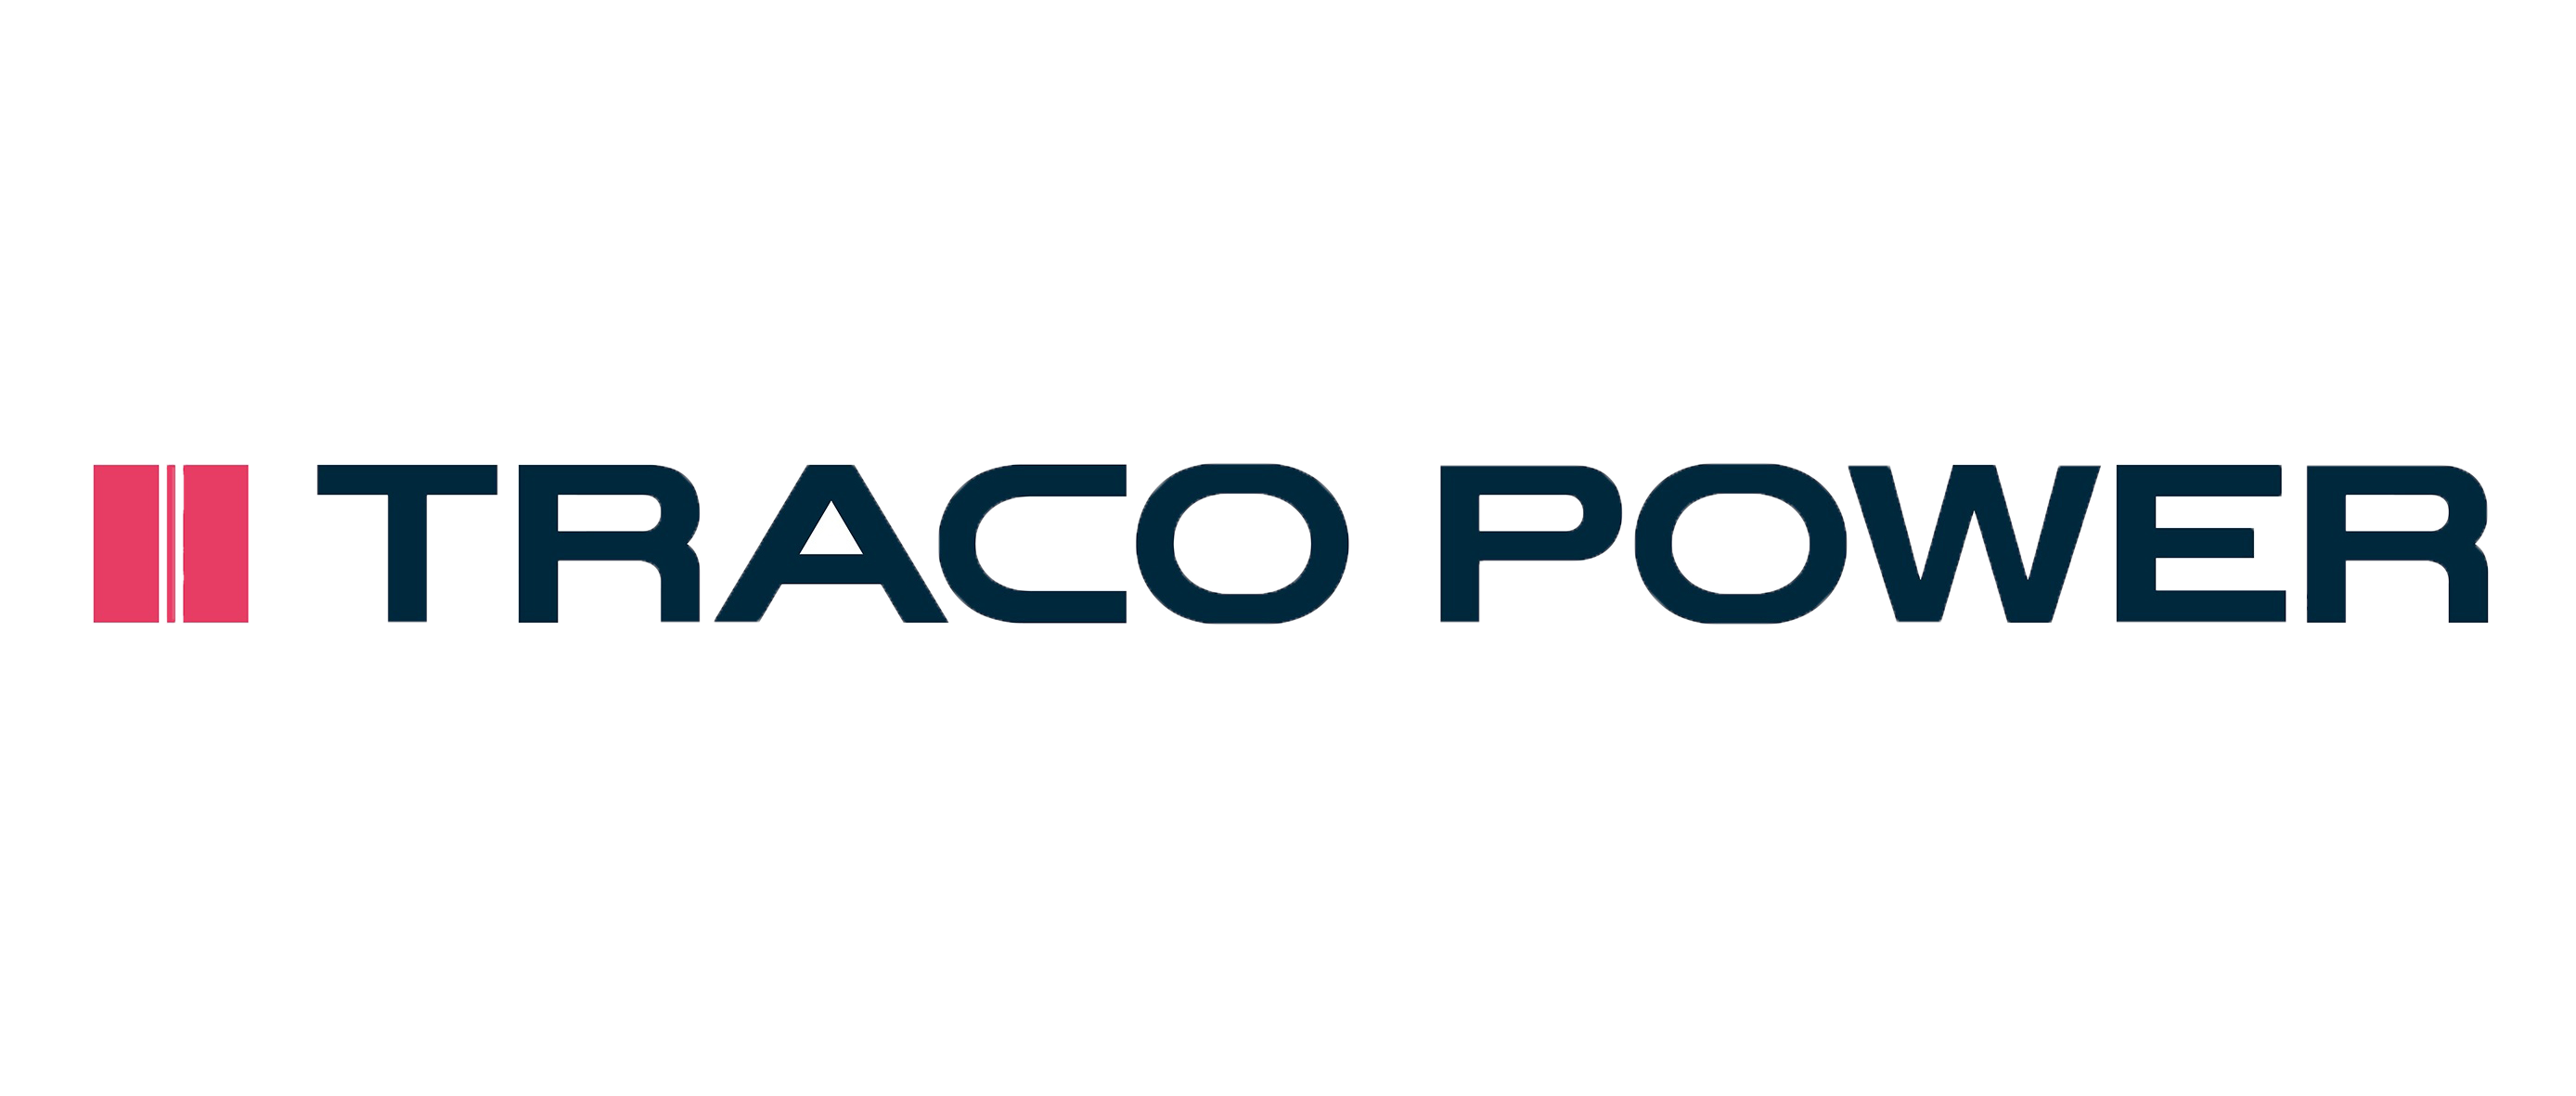 Traco power logo